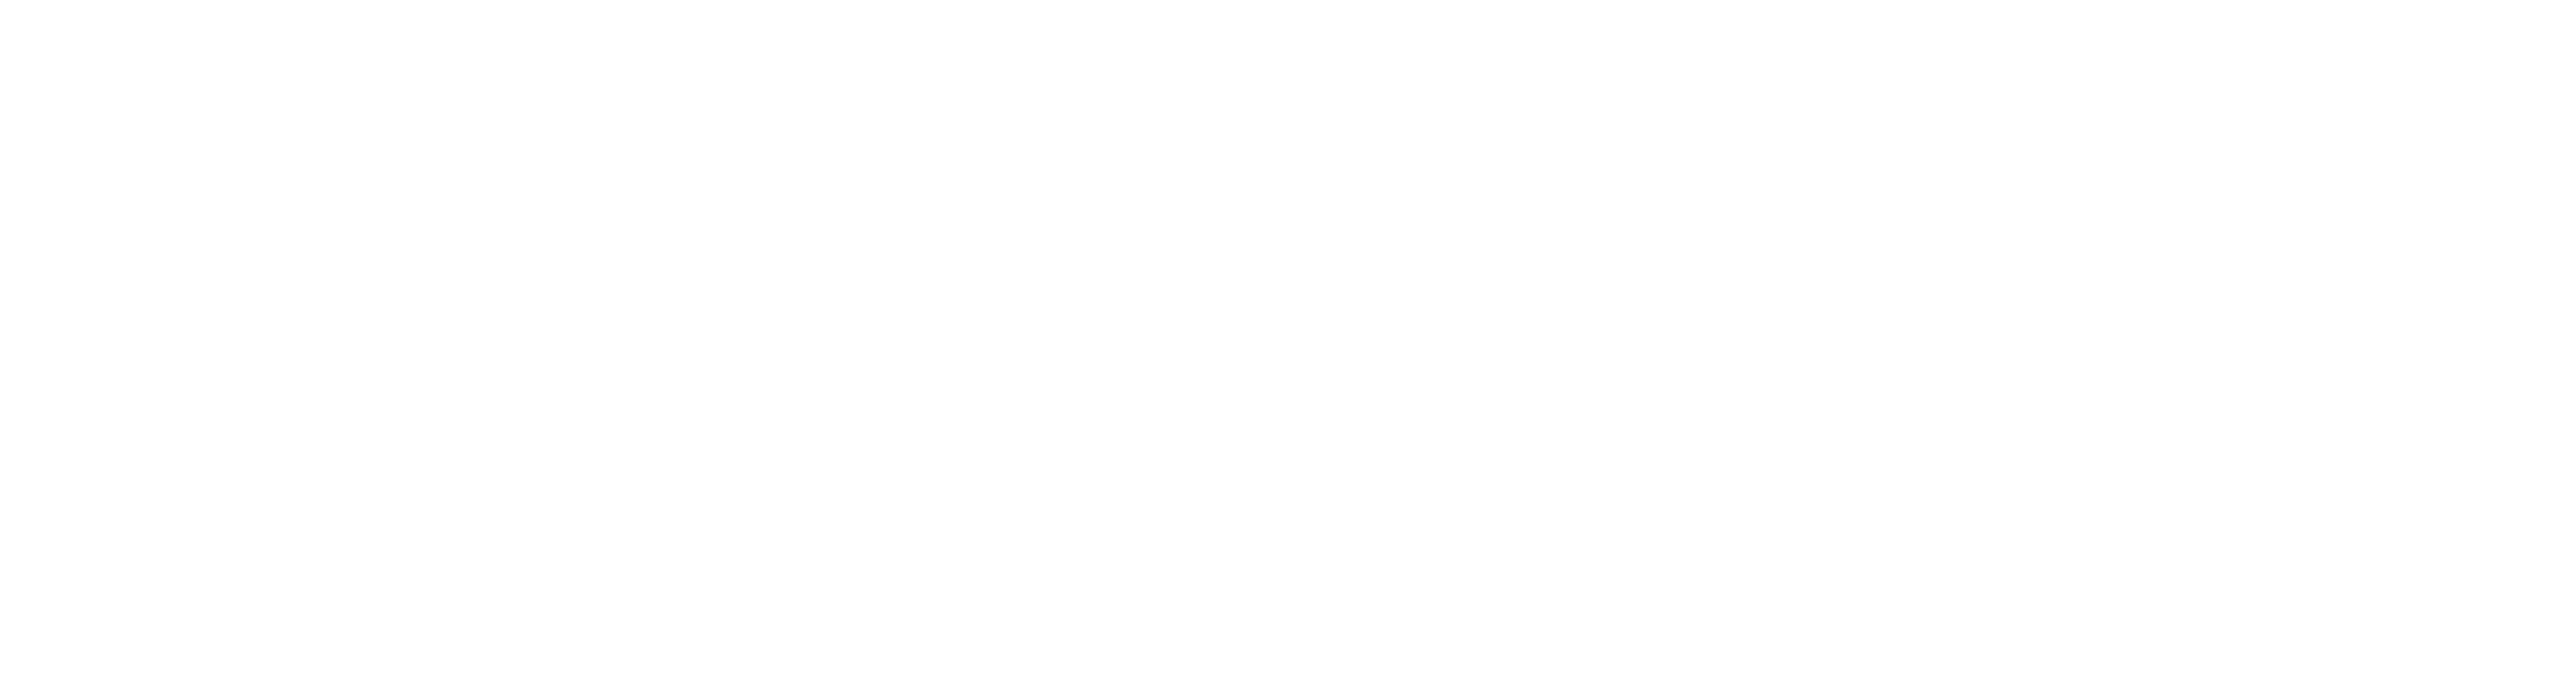 Logotipo: E.A.D. FAESA Centro Universitário